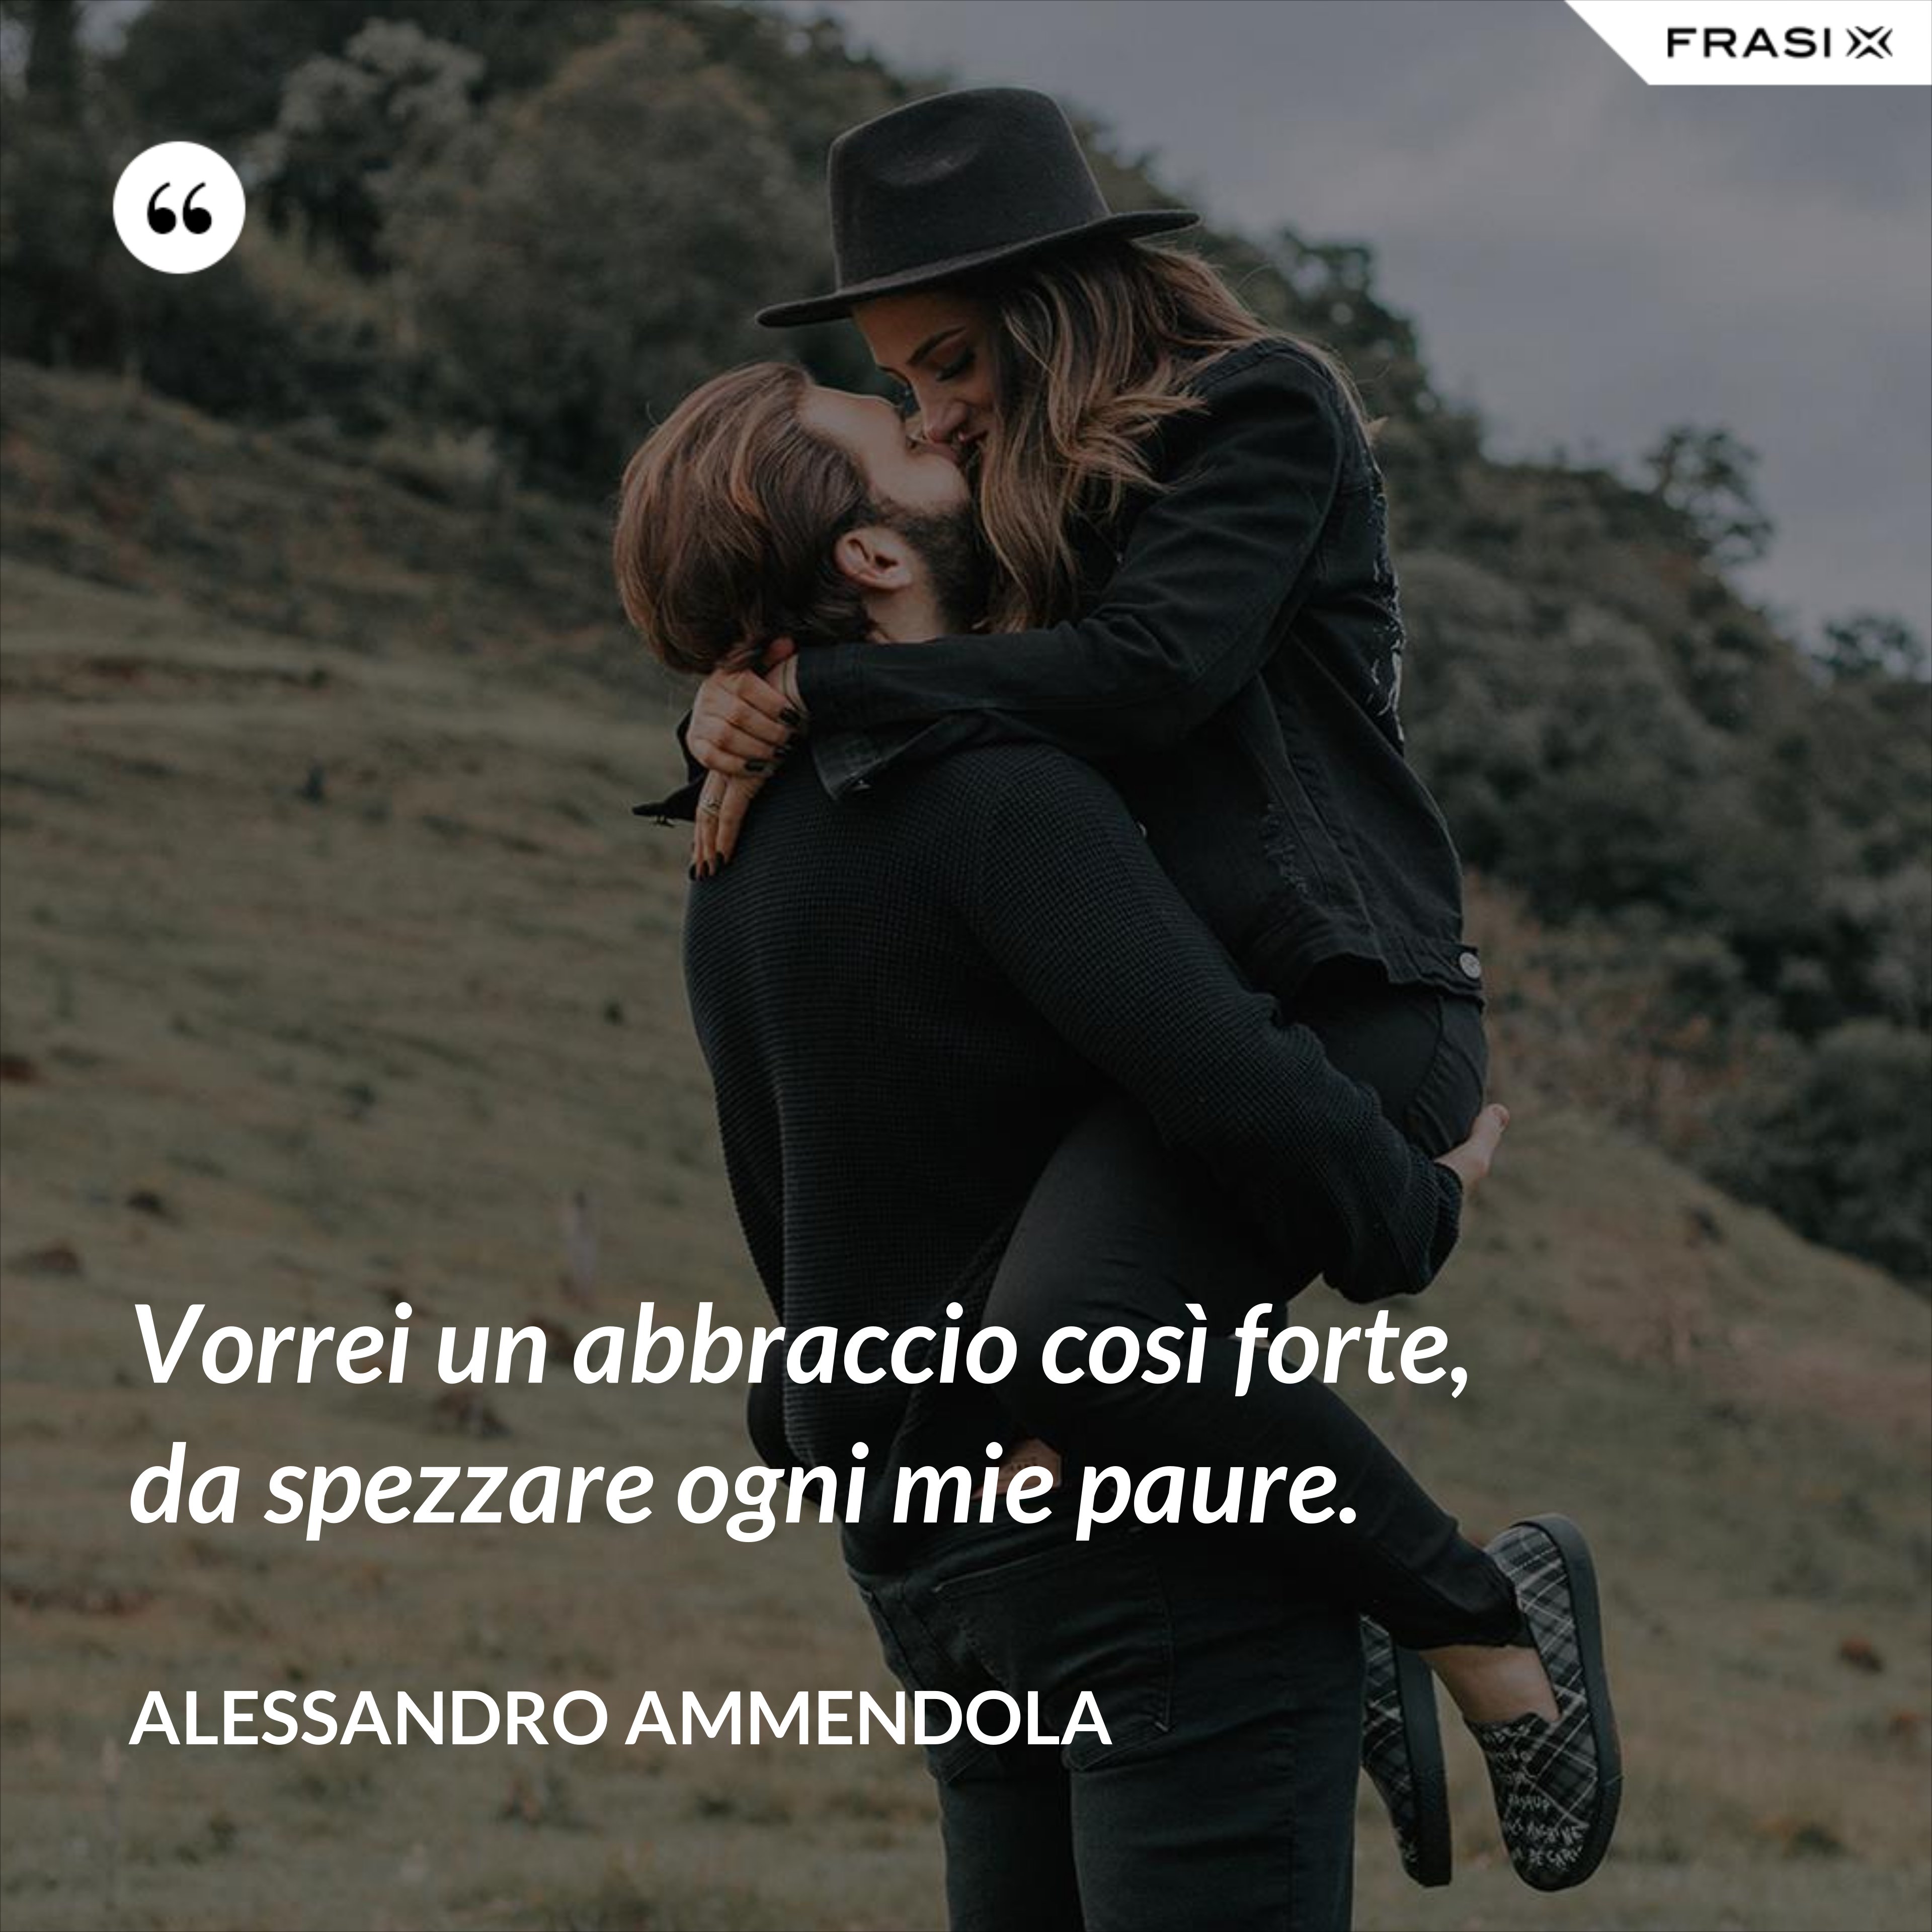 Vorrei un abbraccio così forte, da spezzare ogni mie paure. - Alessandro Ammendola